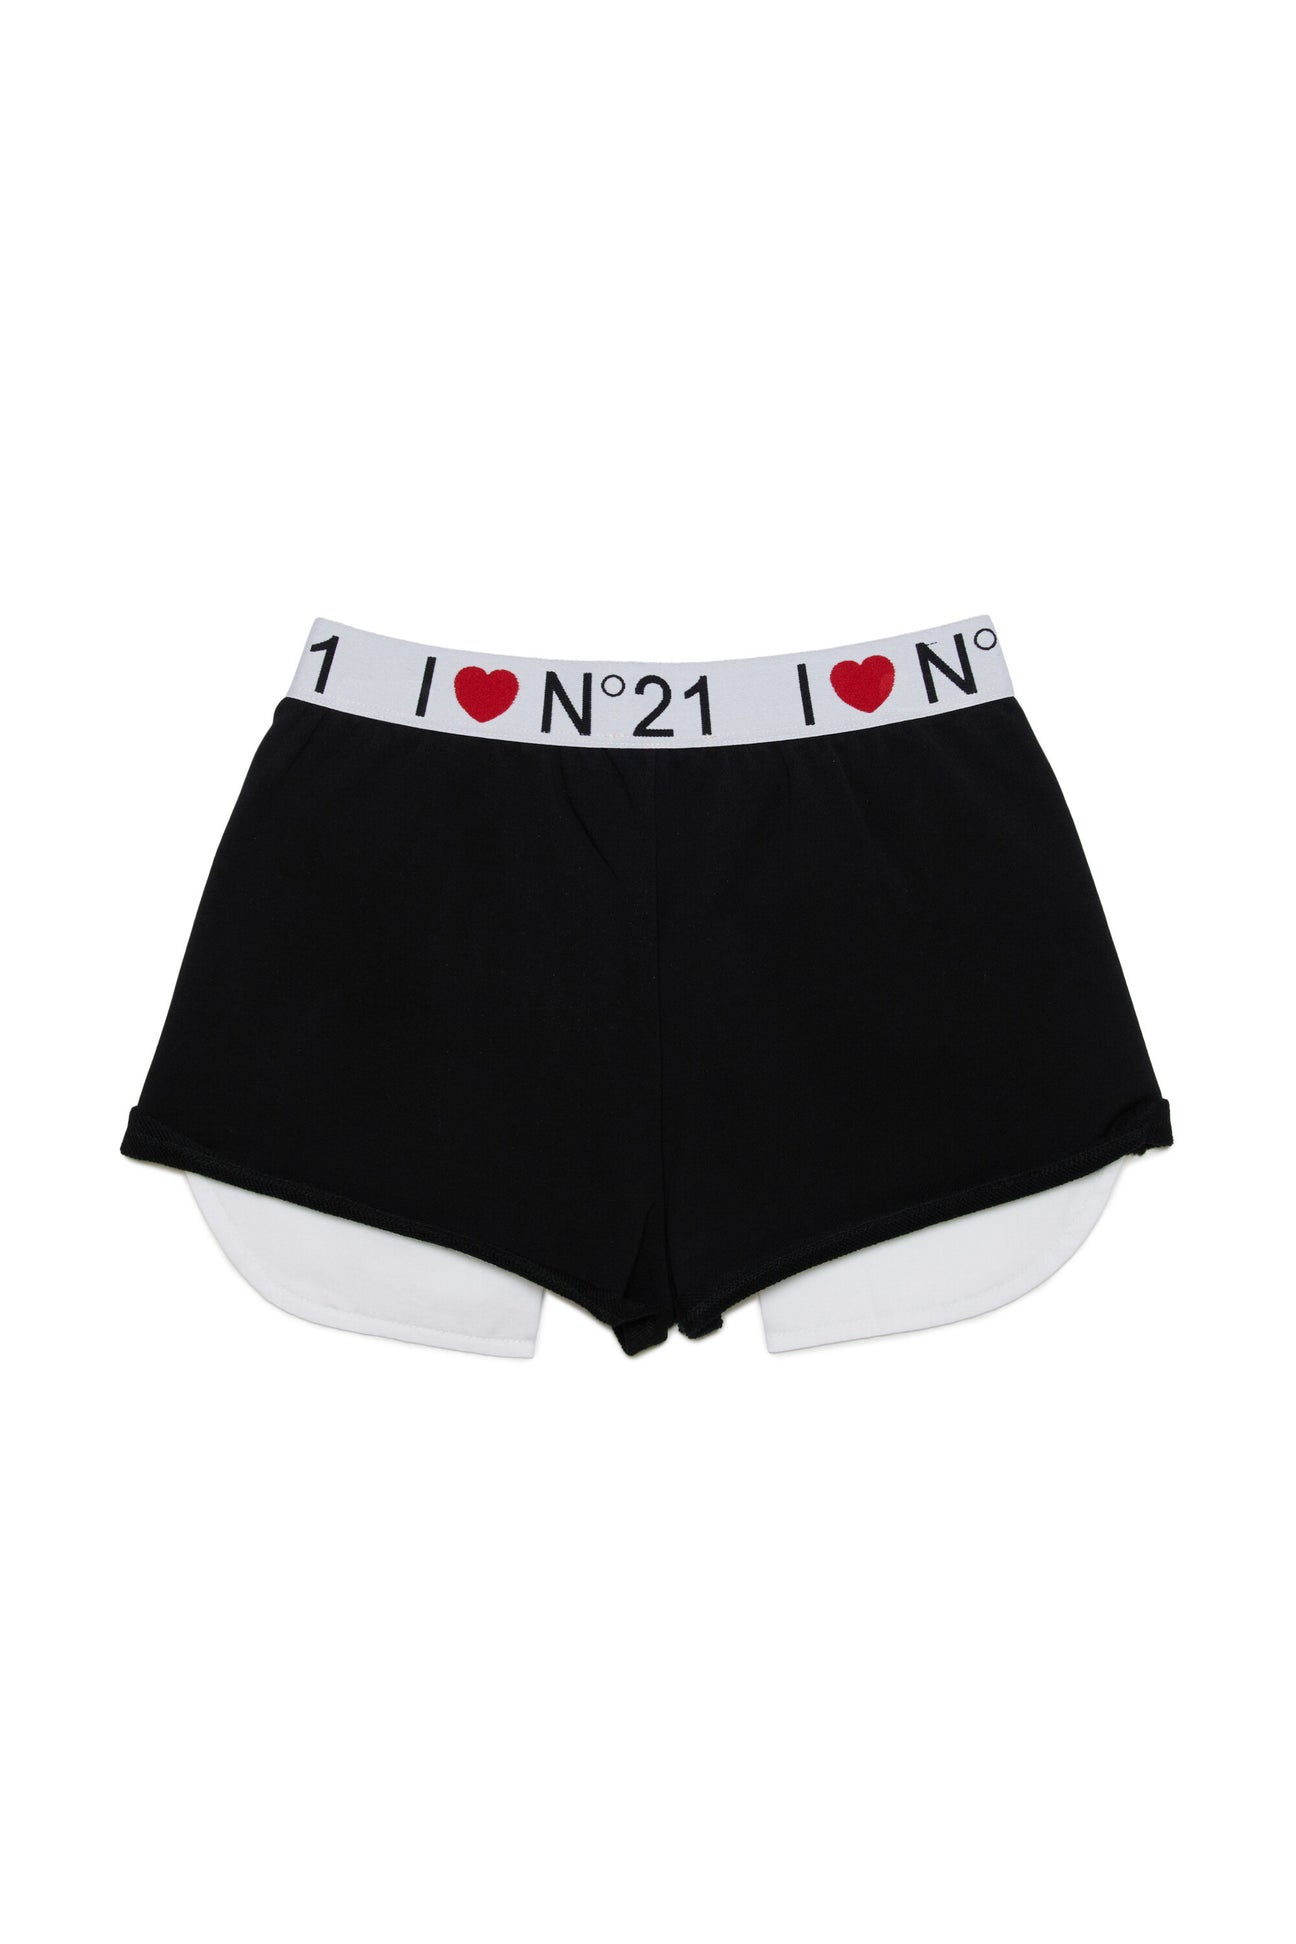 Pantalones cortos en chándal con logotipo I Love N°21 Pantalones cortos en chándal con logotipo I Love N°21